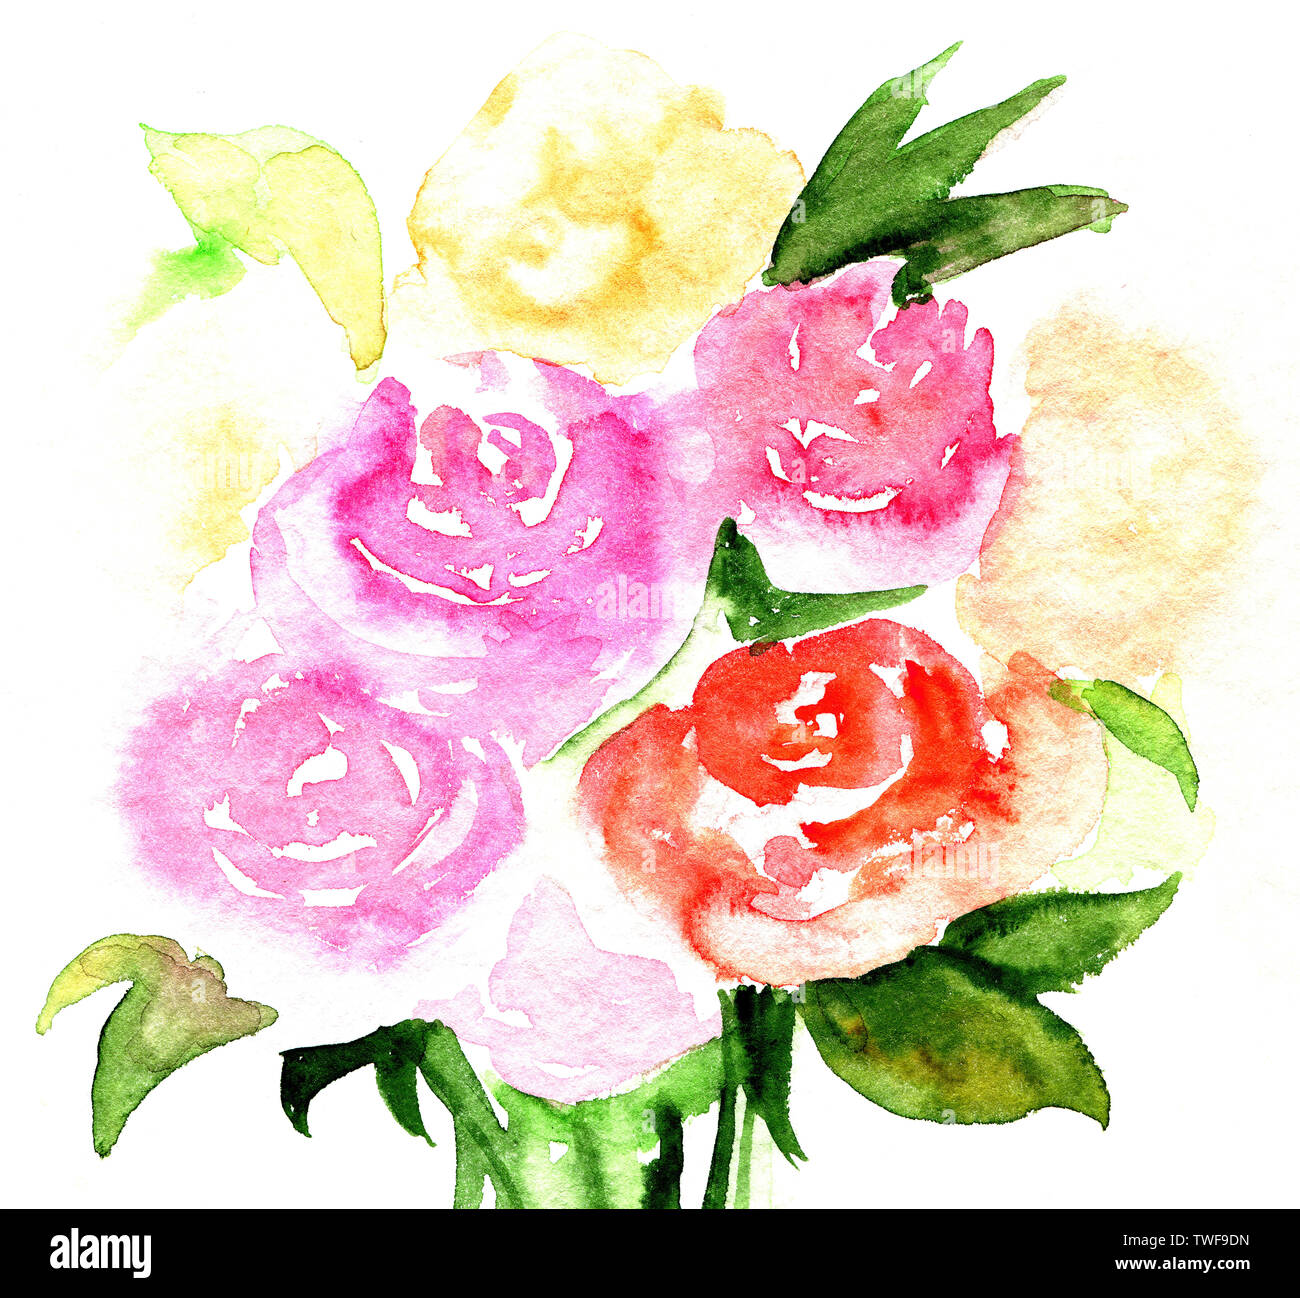 Handgezeichnete Aquarell-Illustration von Rosen. Bouquet von rosa und roten Blumen isoliert auf weißem Hintergrund. Aquarell abstrakte Rosen. Stockfoto